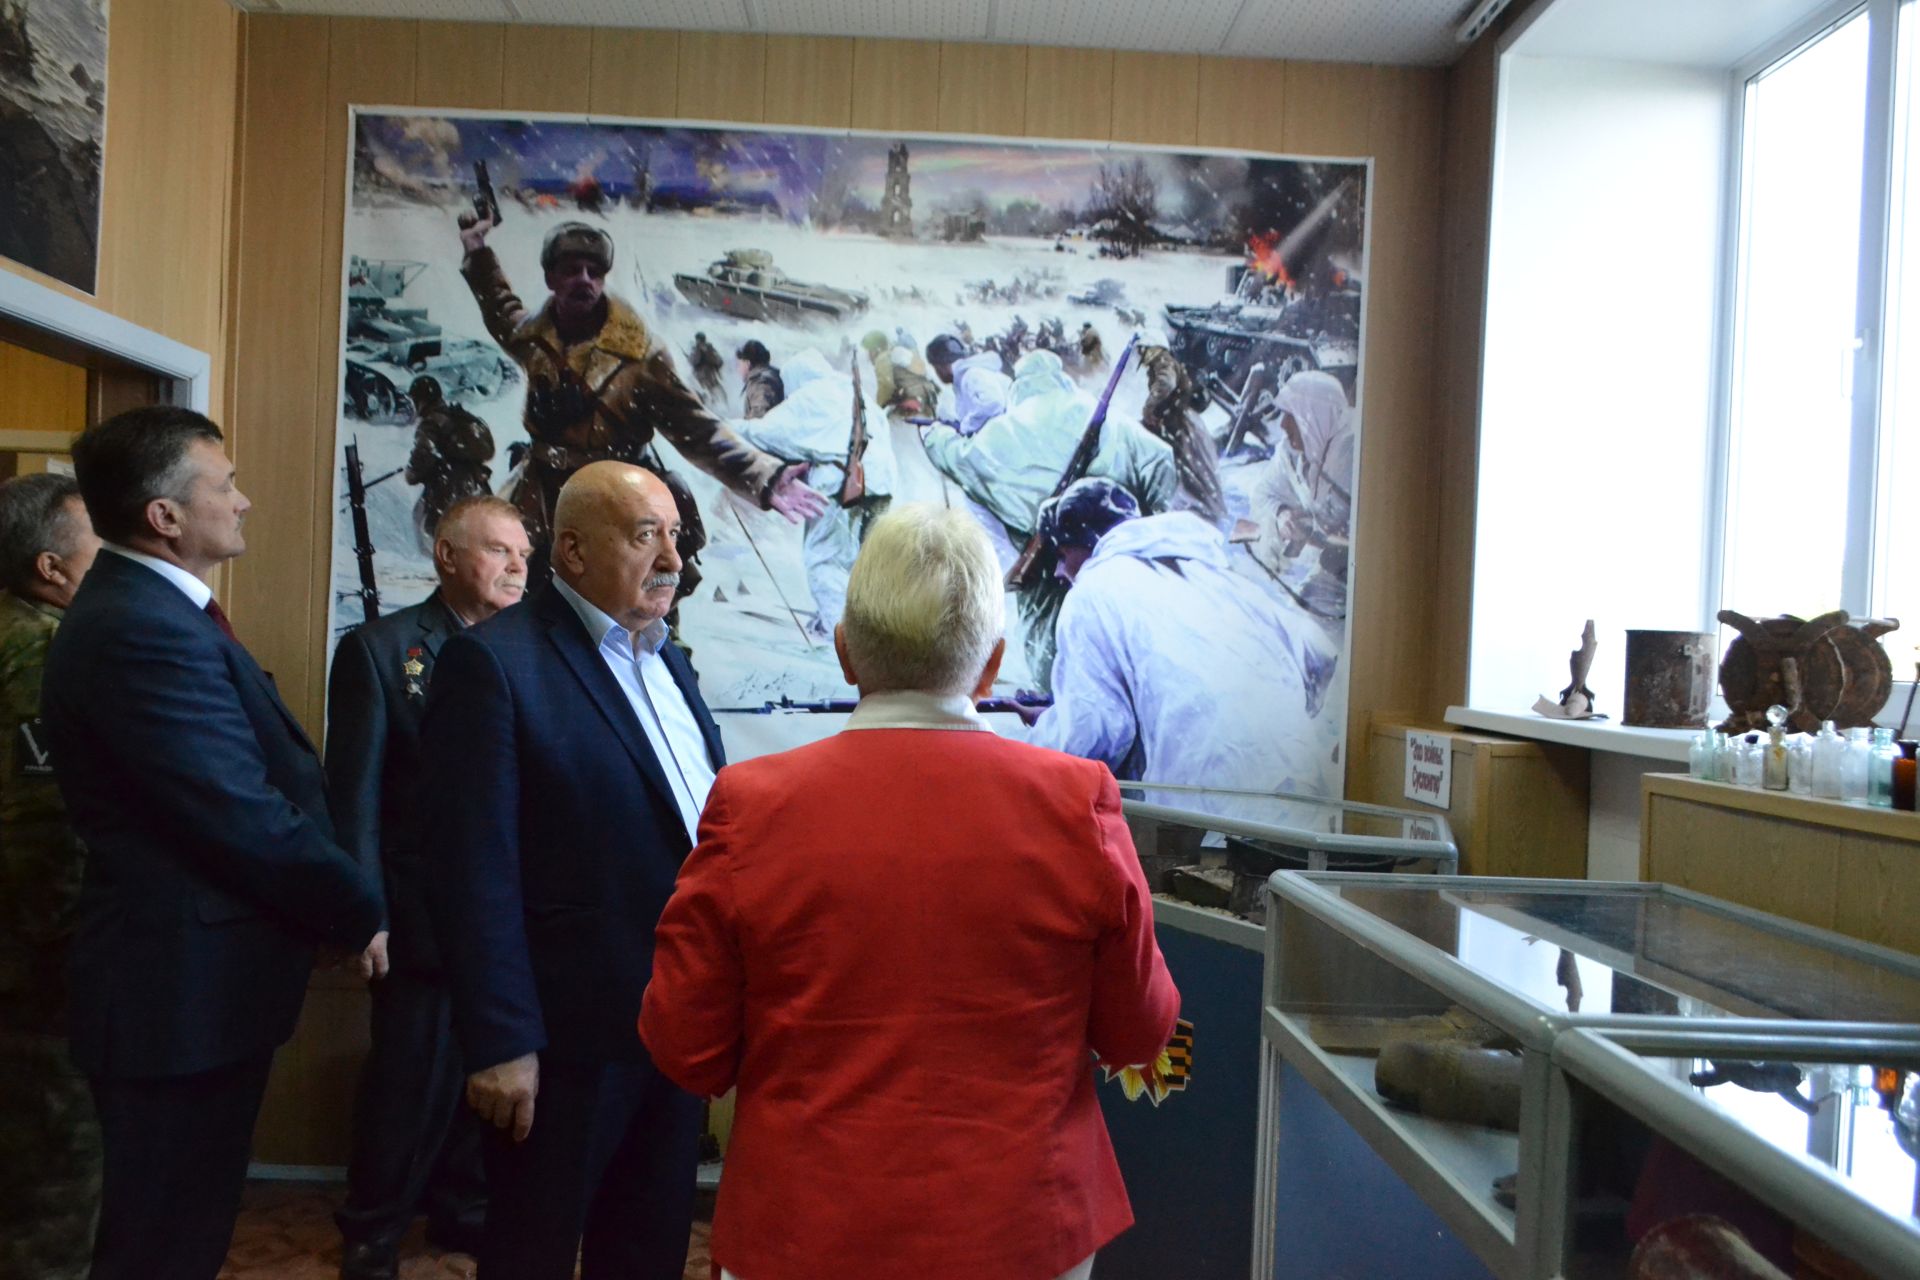 Герой России Геворк Исаханян провел Урок мужества в Верхнеуслонской гимназии и посетил Музей памяти